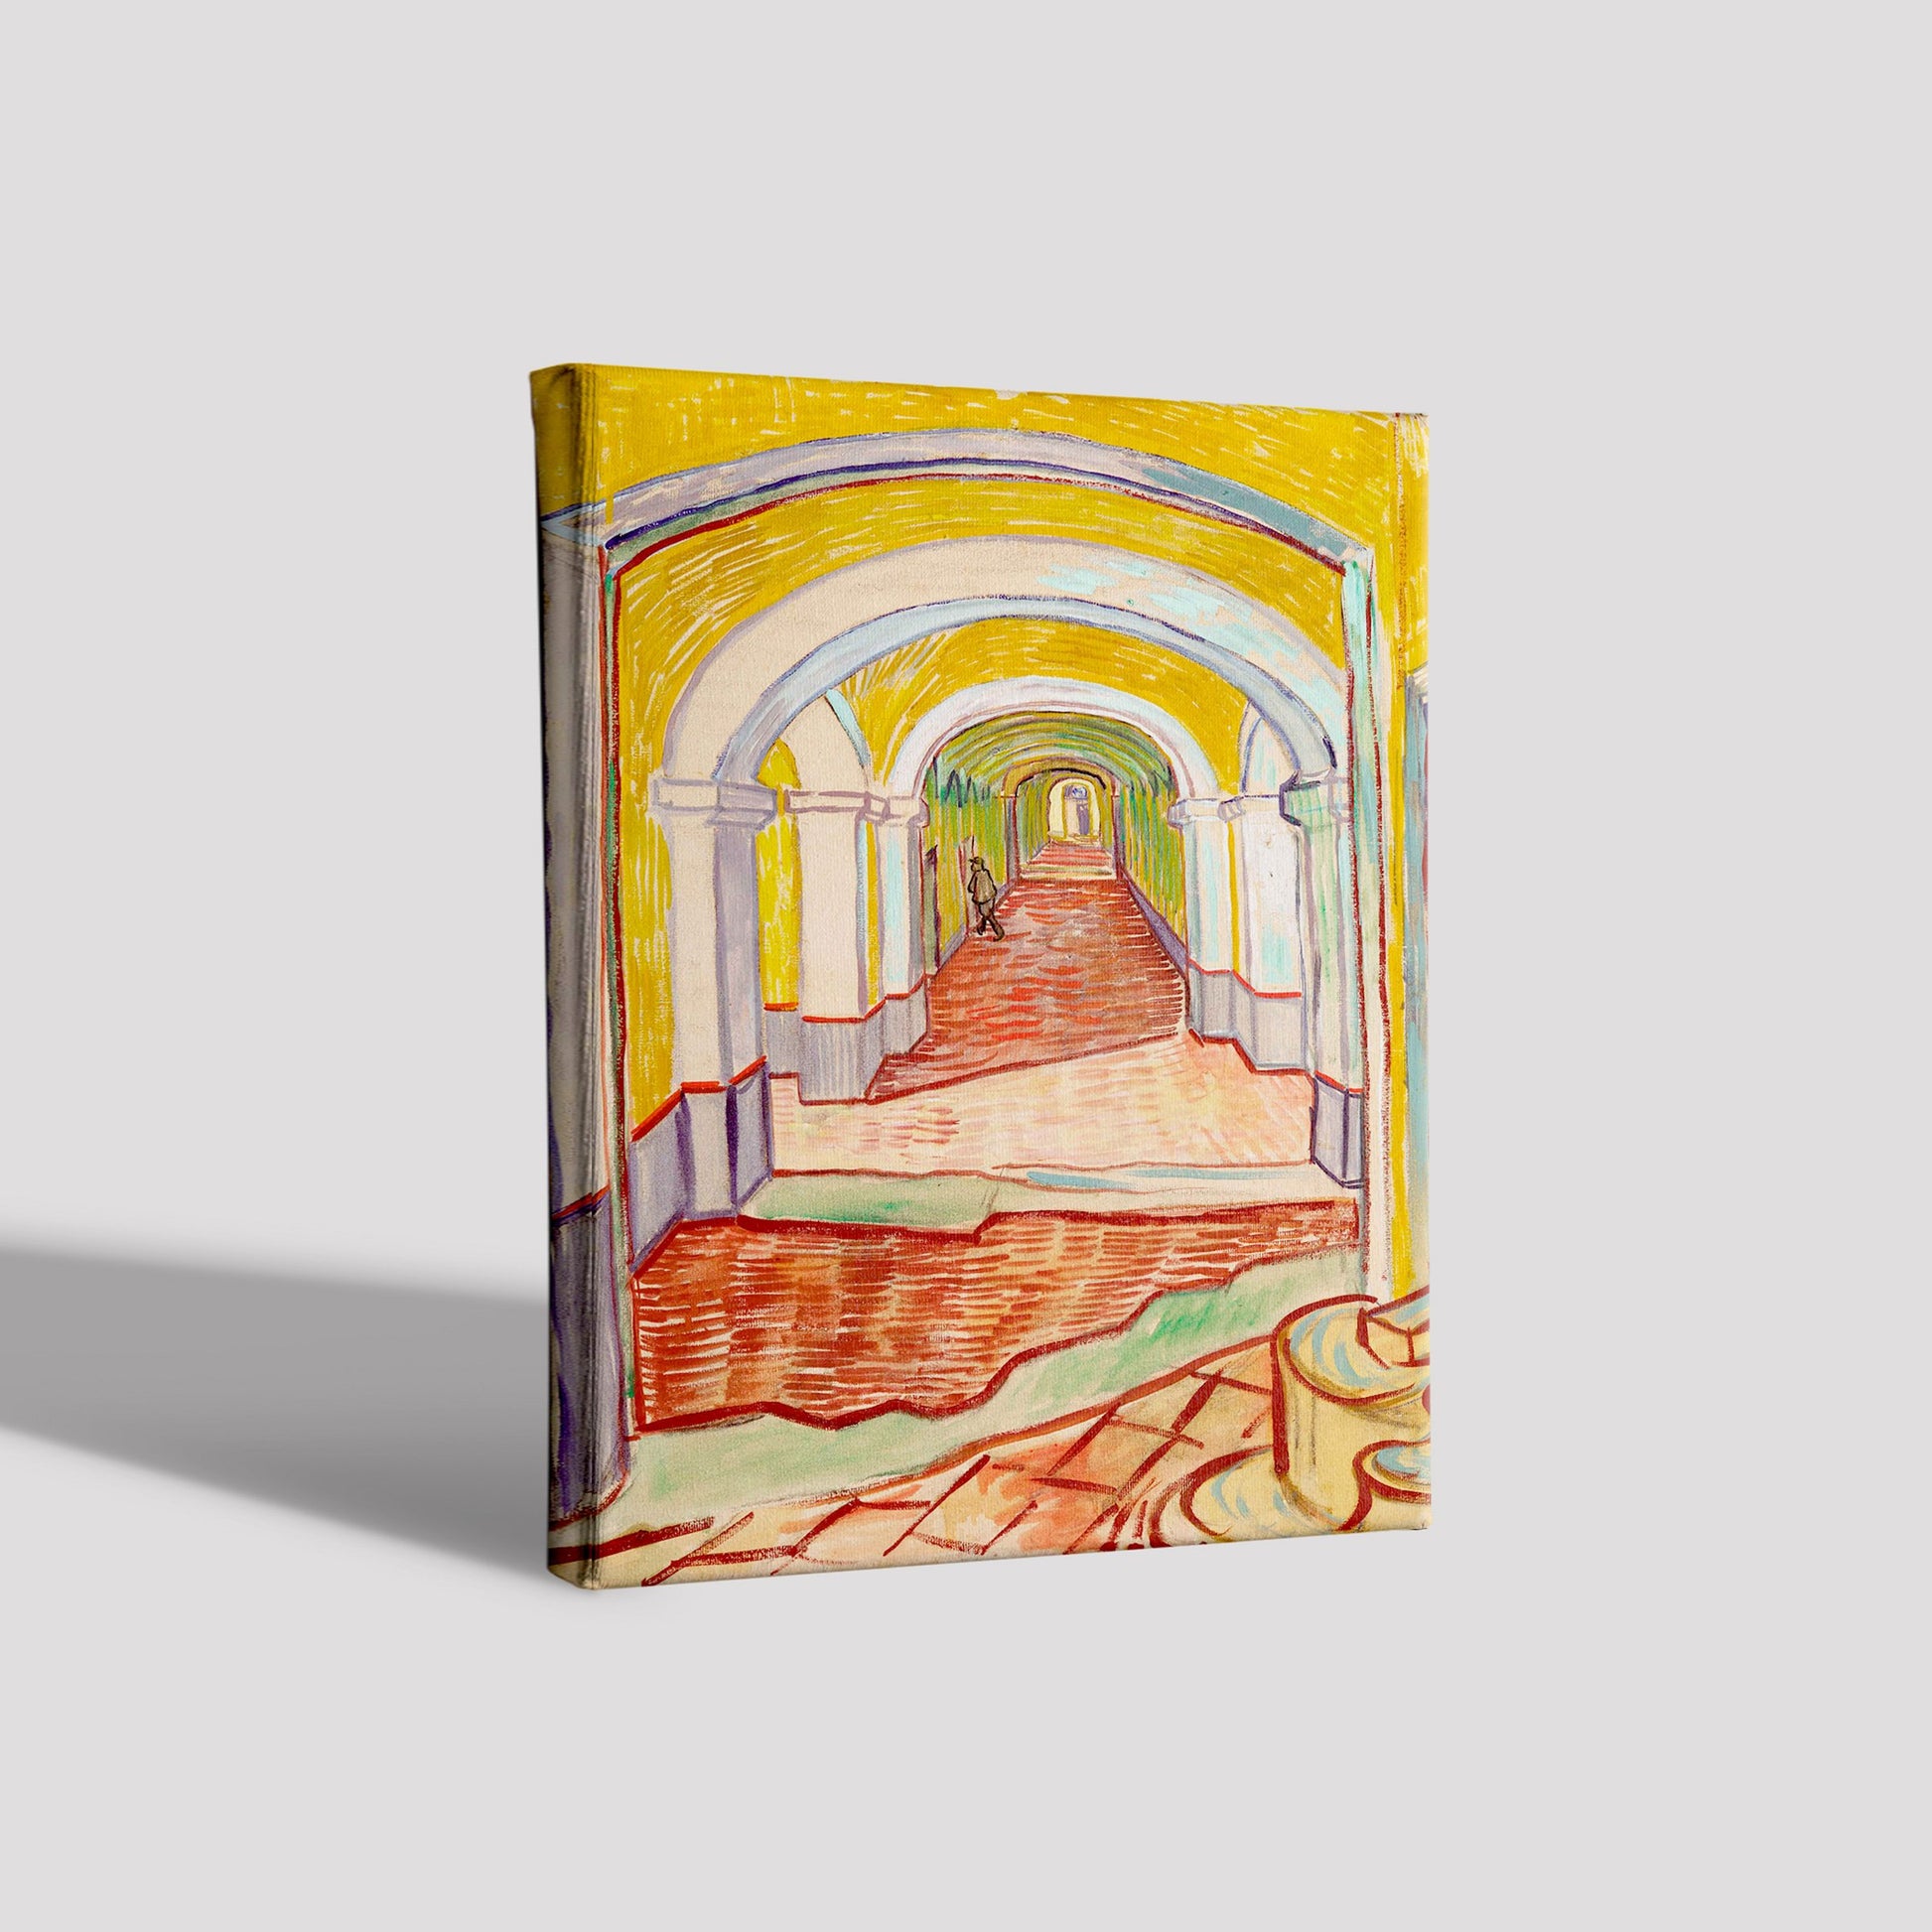 Corridor in the Asylum By Van Gogh Painting - Meri Deewar - MeriDeewar